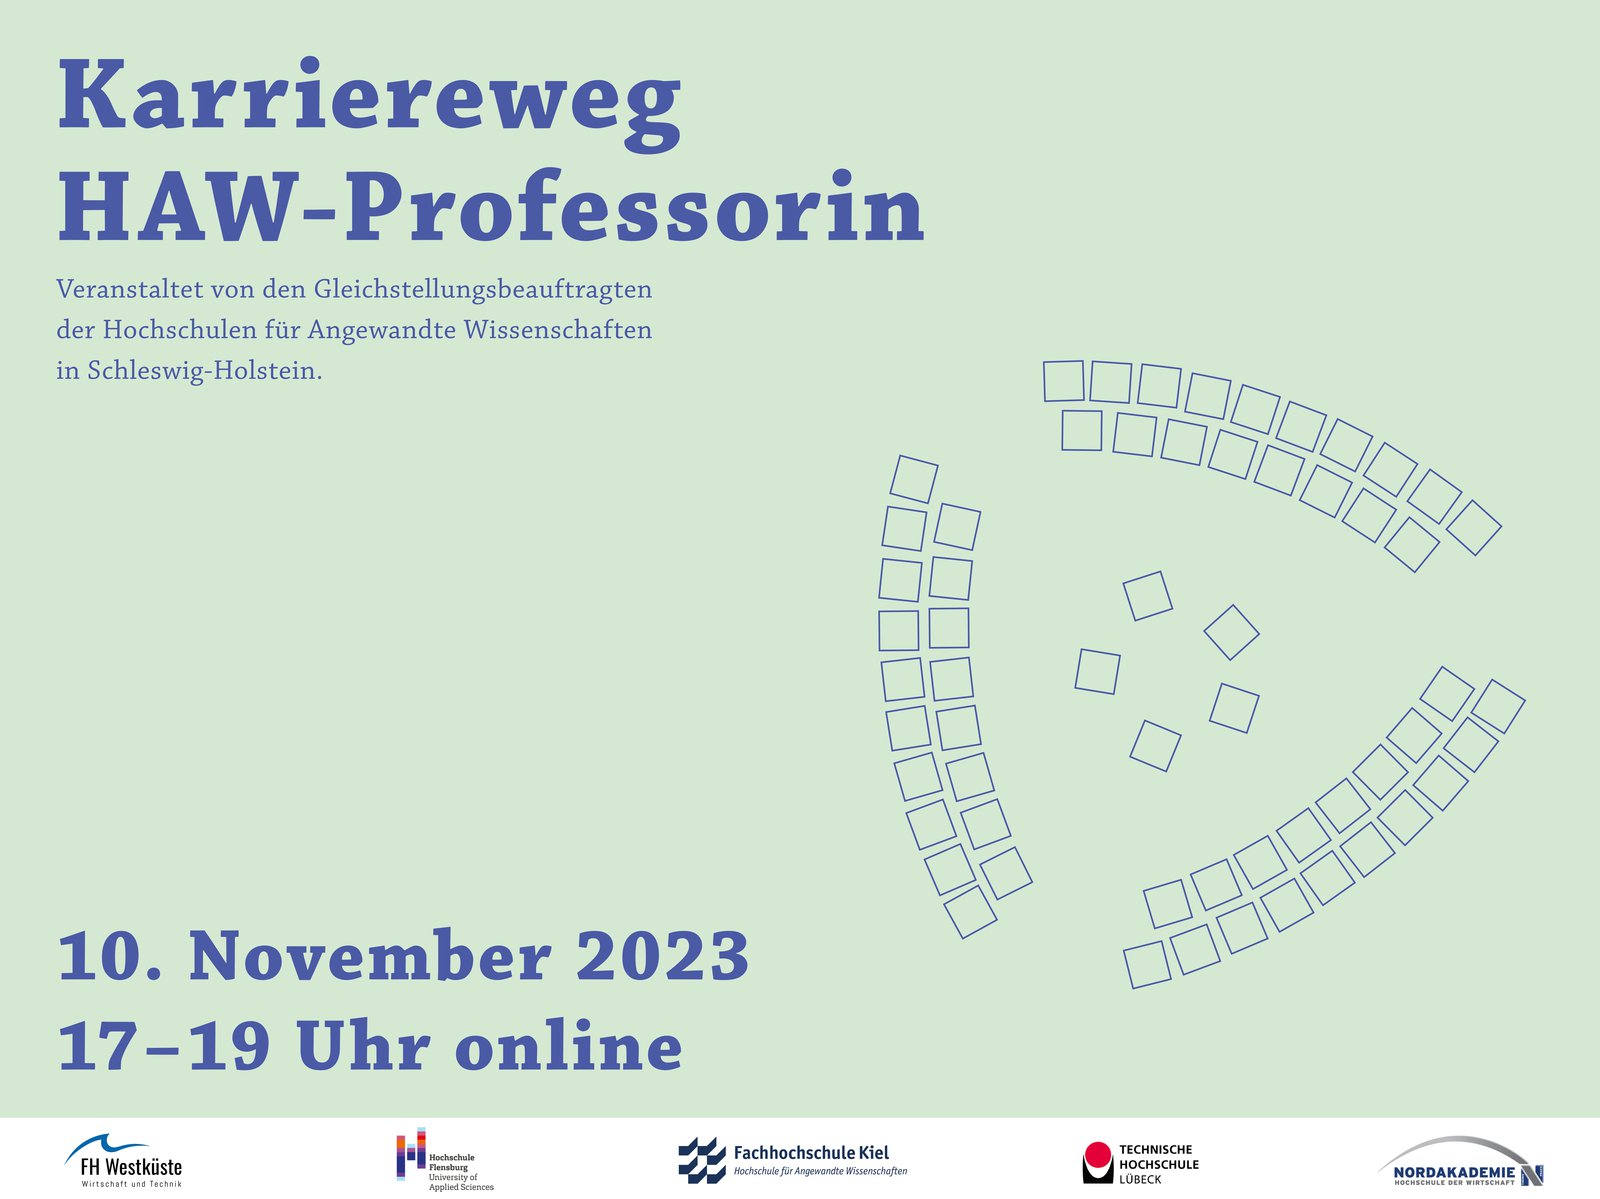 Online-Infoveranstaltung Karriereweg HAW-Professorin am 10.11. 17-19 Uhr